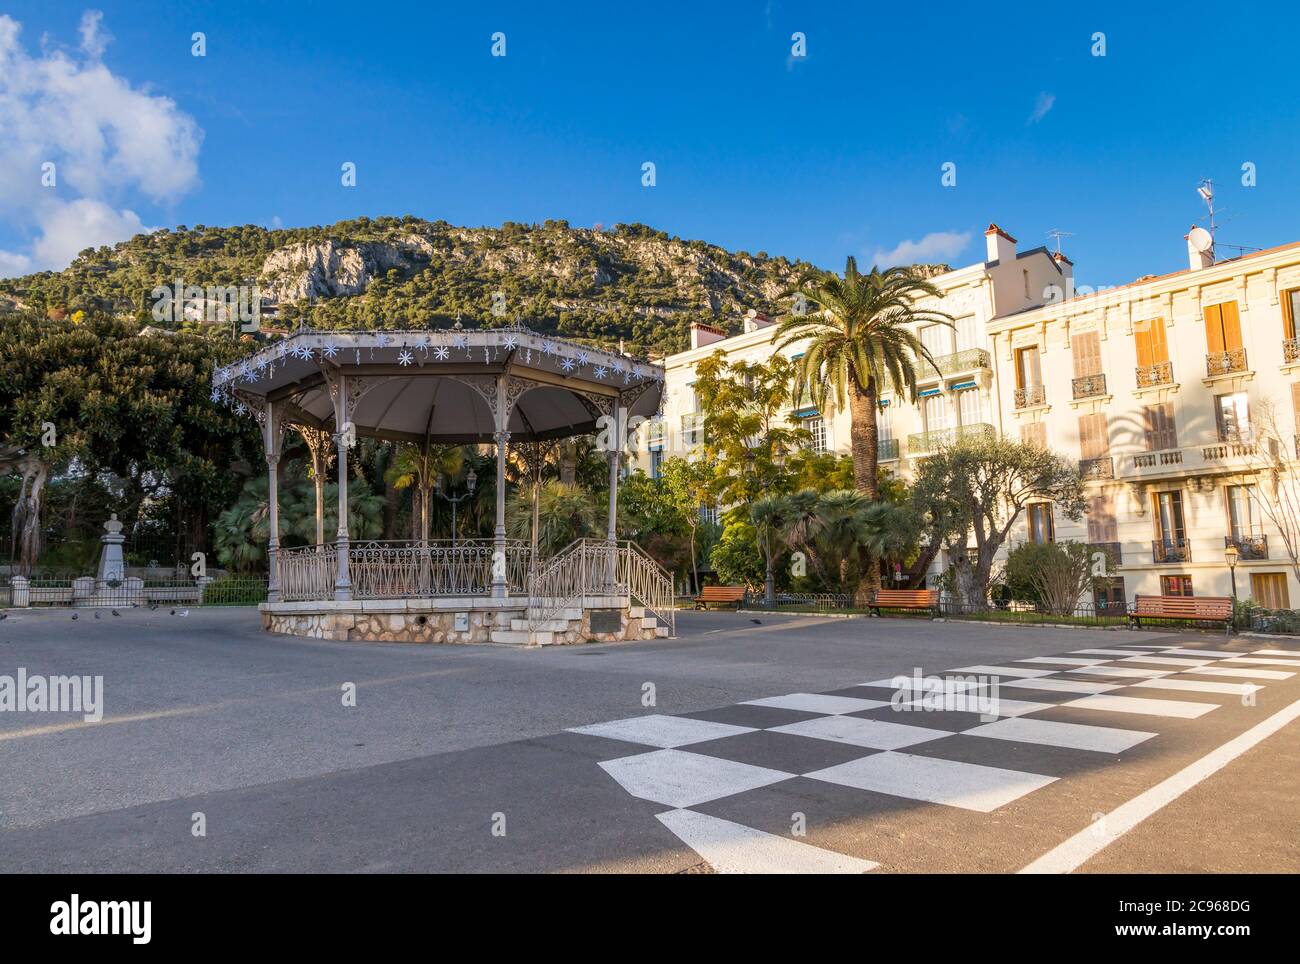 Place du Général de Gaulle, Beaulieu sur Mer, Cote d'Azur, France, Europe Stock Photo